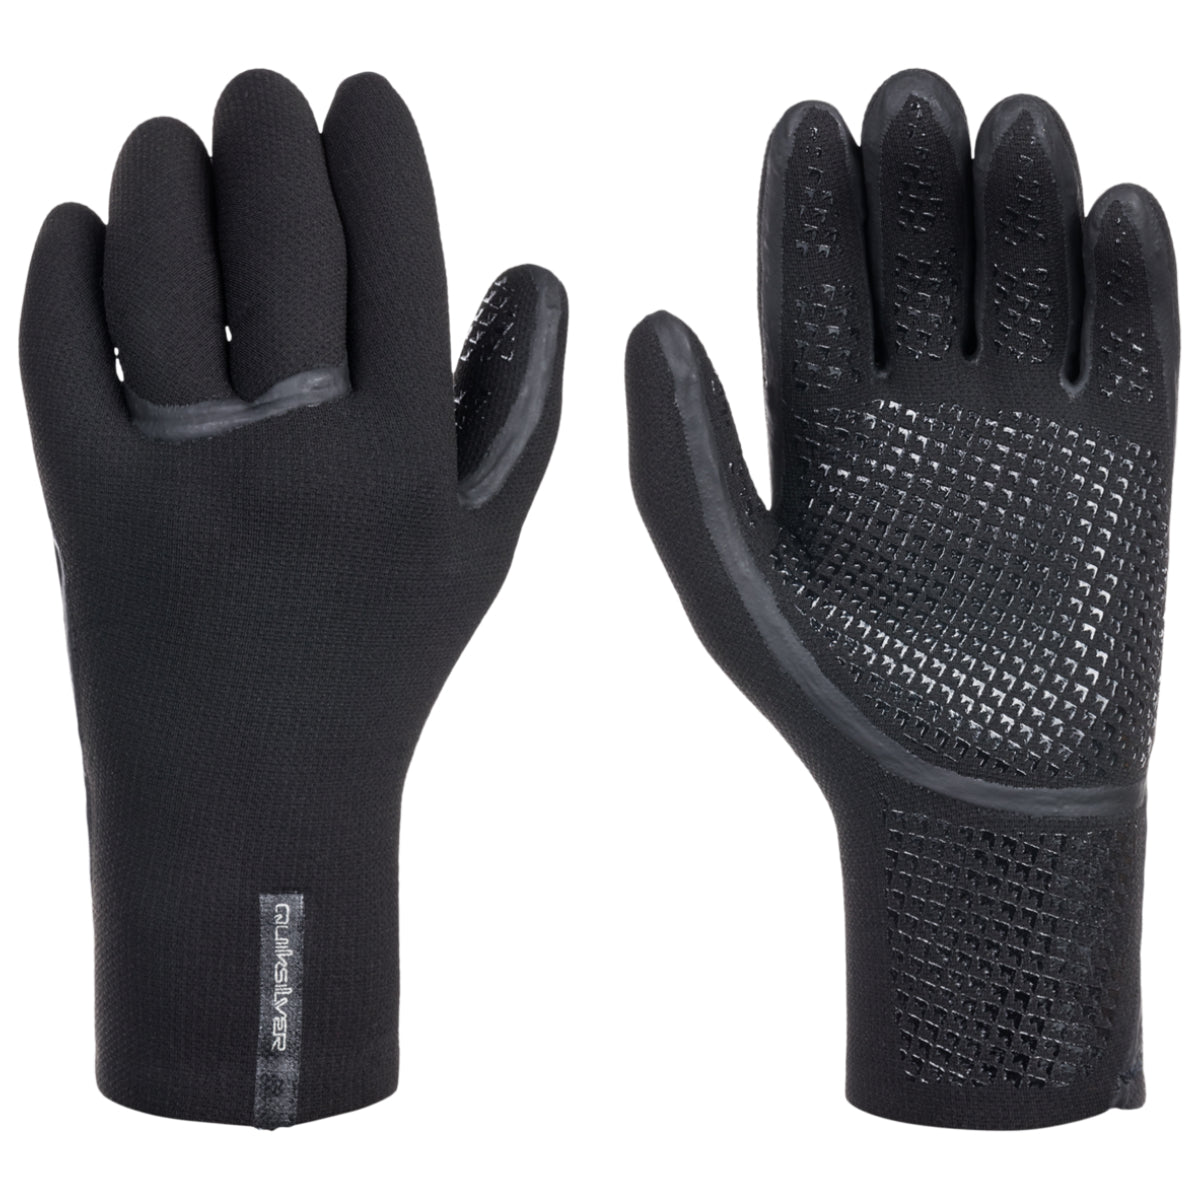 Cleanline – Surf 3mm Marathon Sessions Quiksilver Gloves